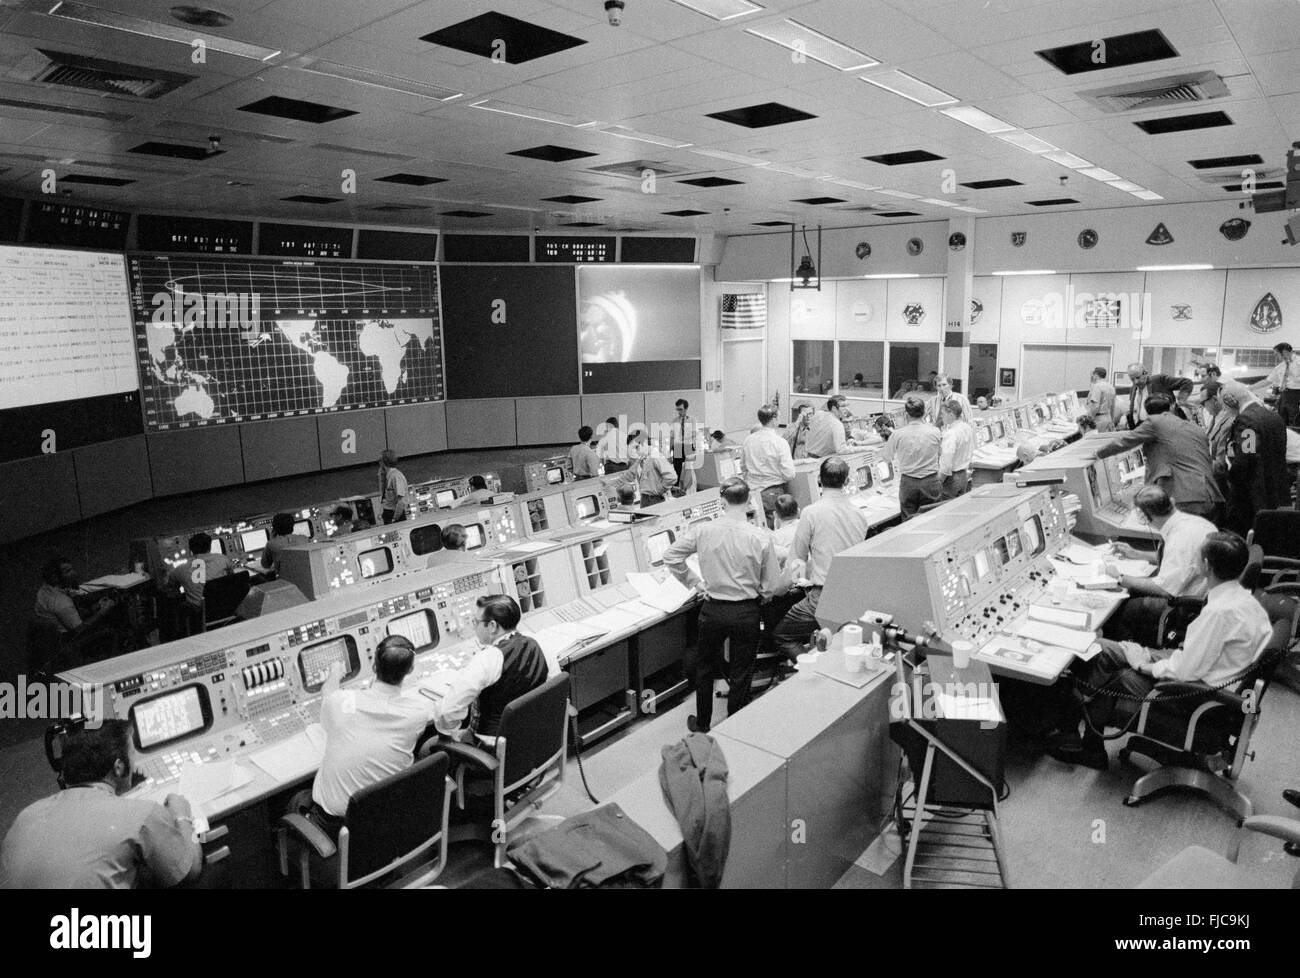 Gesamtansicht der Tätigkeit in der Mission Operations Control Room im Mission Control Center während der Apollo-14-Umsetzung und Docking-Manöver 31. Januar 1971 in Cape Canaveral, Florida. Durch einen Docking-Mechanismus wurden Problem sechs Versuche unternommen, bevor ein erfolgreiches Andocken des die Monitorbox mit der Mondlandefähre abgeschlossen wurde. Stockfoto